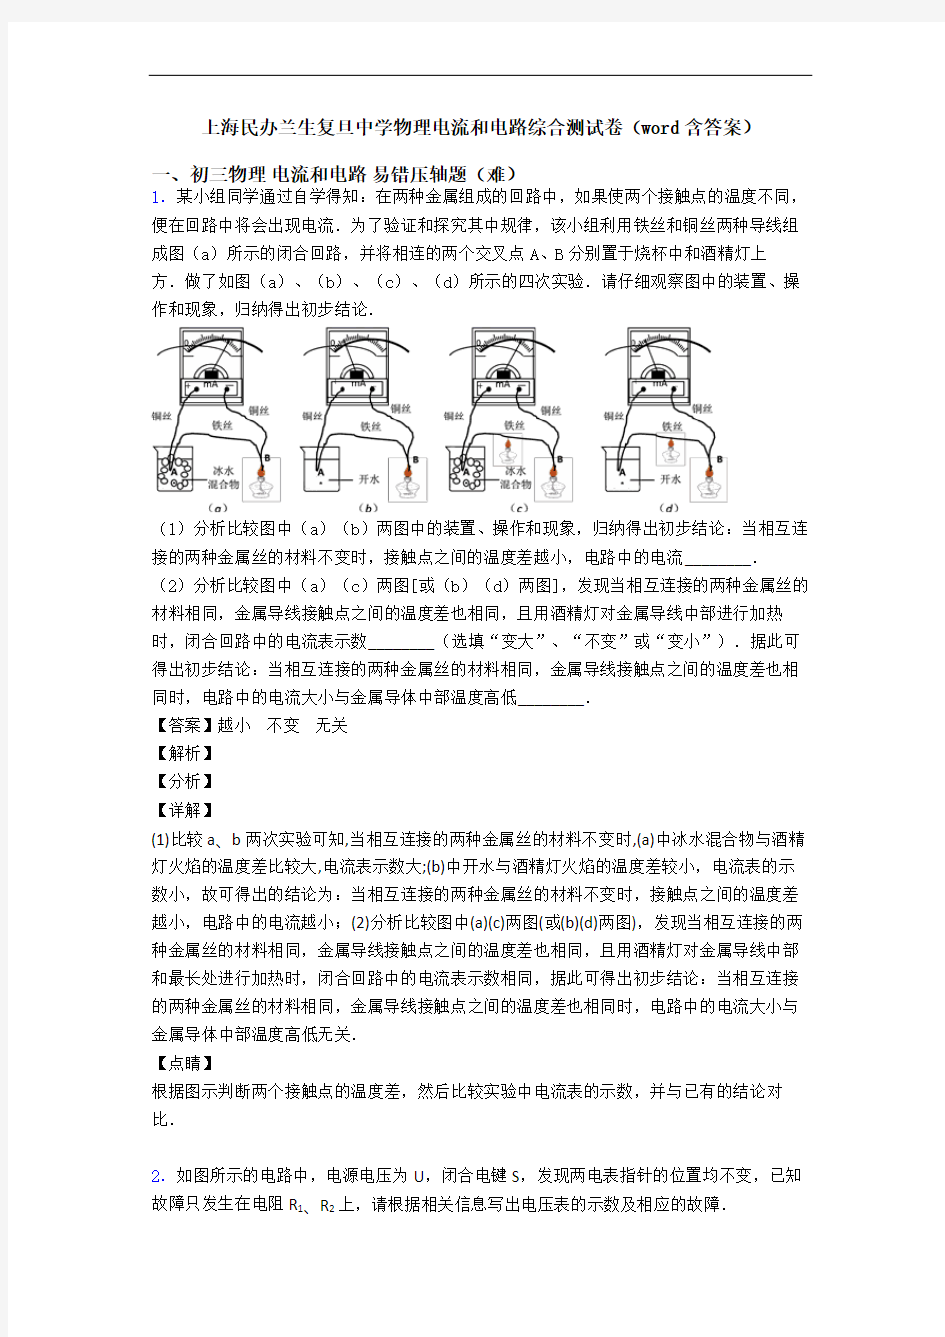 上海民办兰生复旦中学物理电流和电路综合测试卷(word含答案)